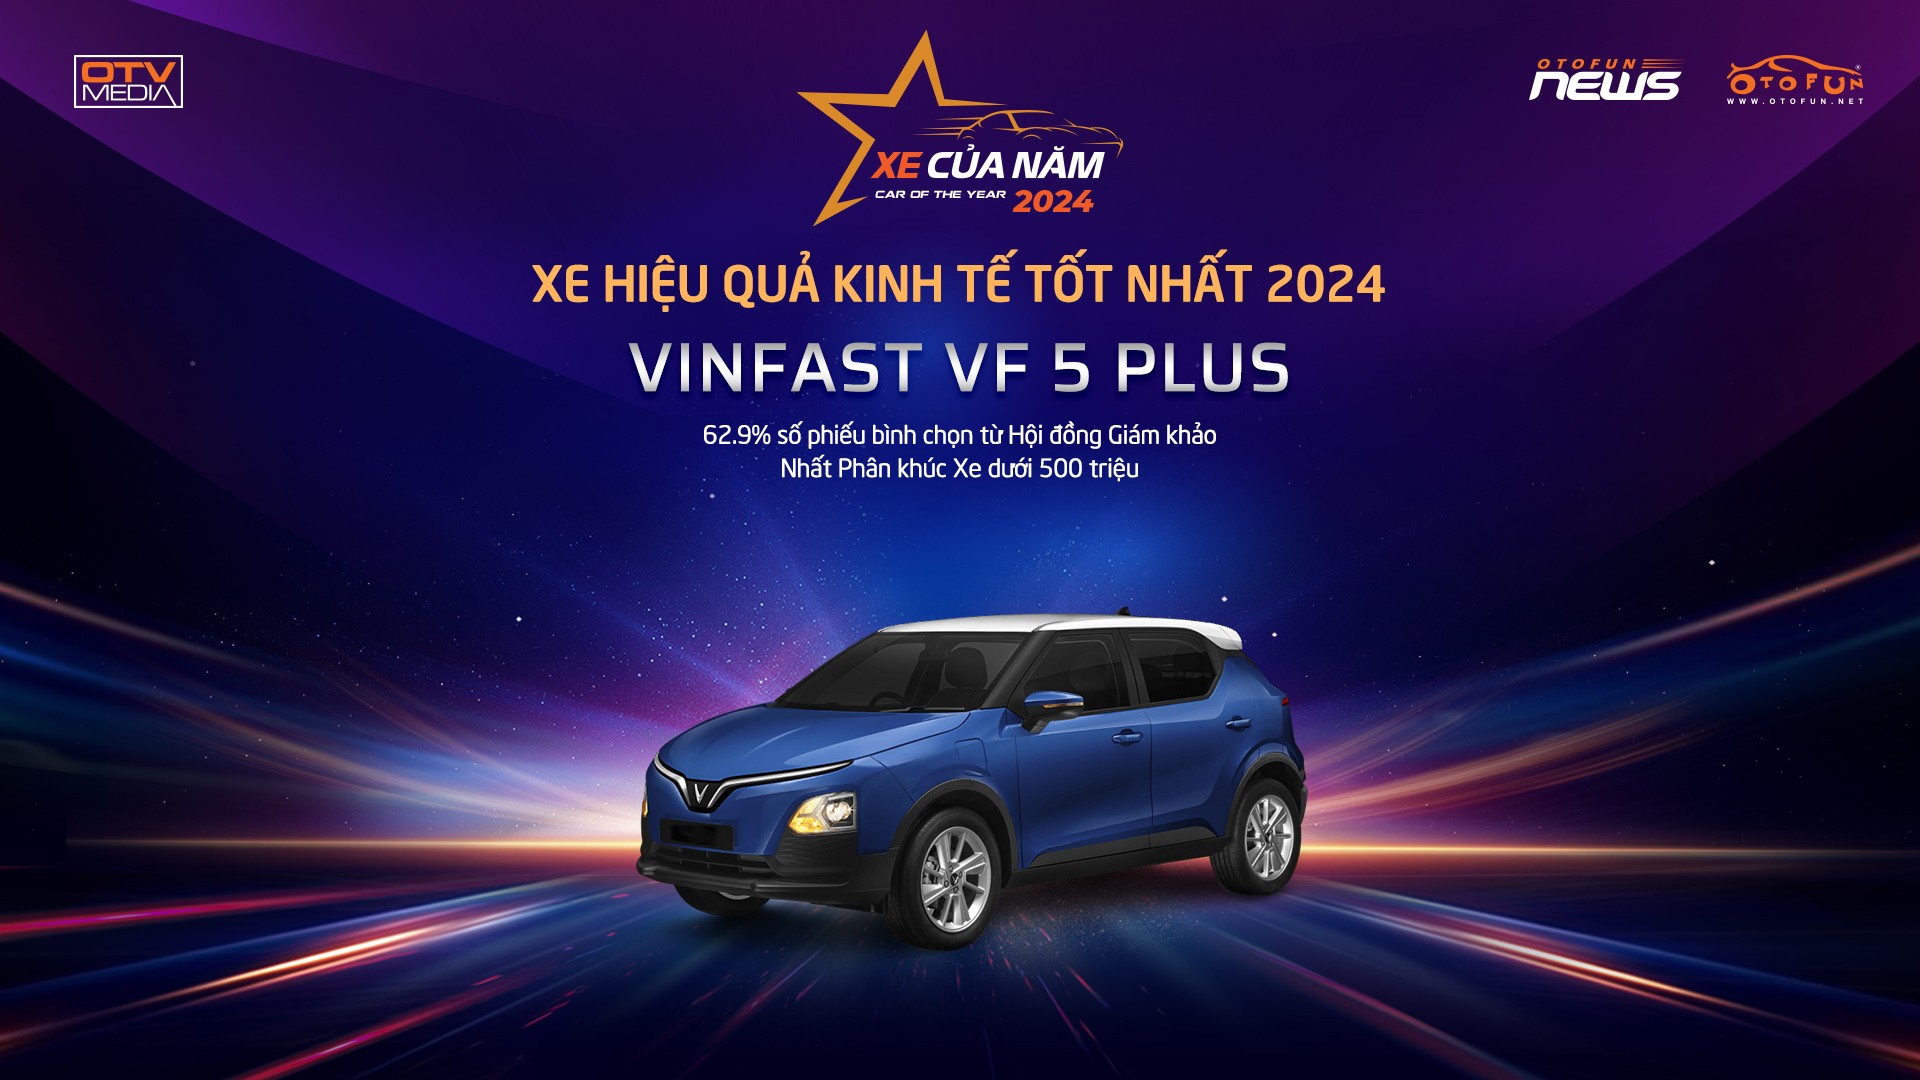 VinFast VF5 Plus – chiếc xe giành danh hiệu XE HIỆU QUẢ KINH TẾ TỐT NHẤT 2024